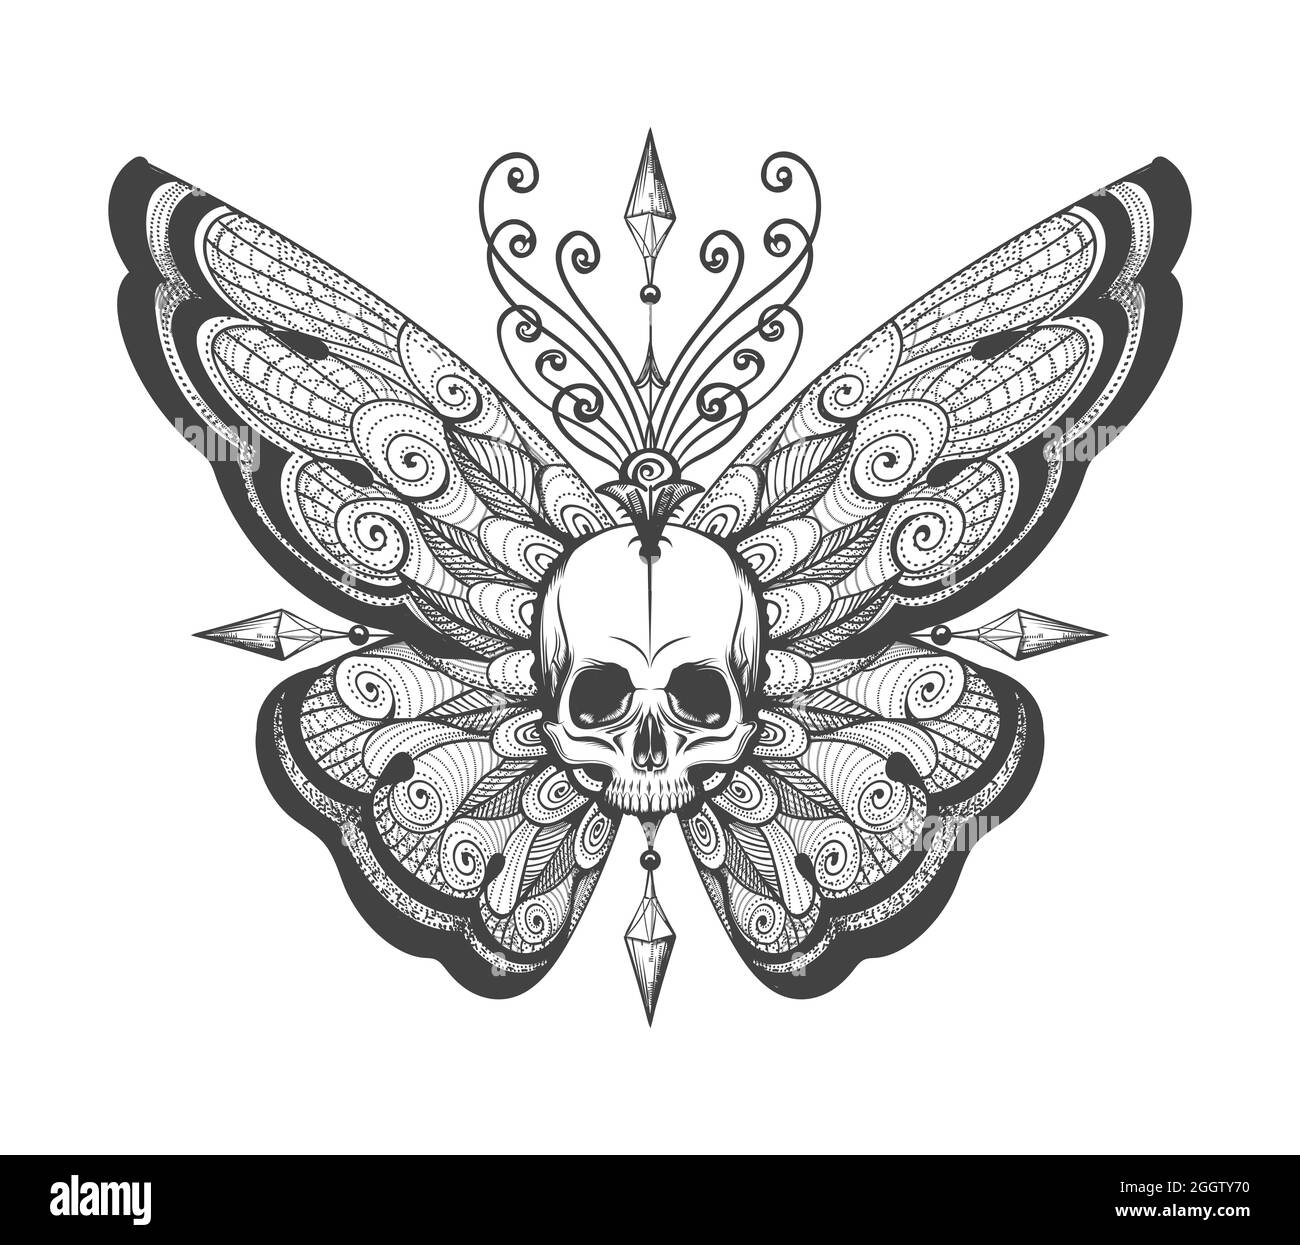 Tatouage de crâne humain avec ailes de papillon isolées sur blanc. Illustration vectorielle. Illustration de Vecteur